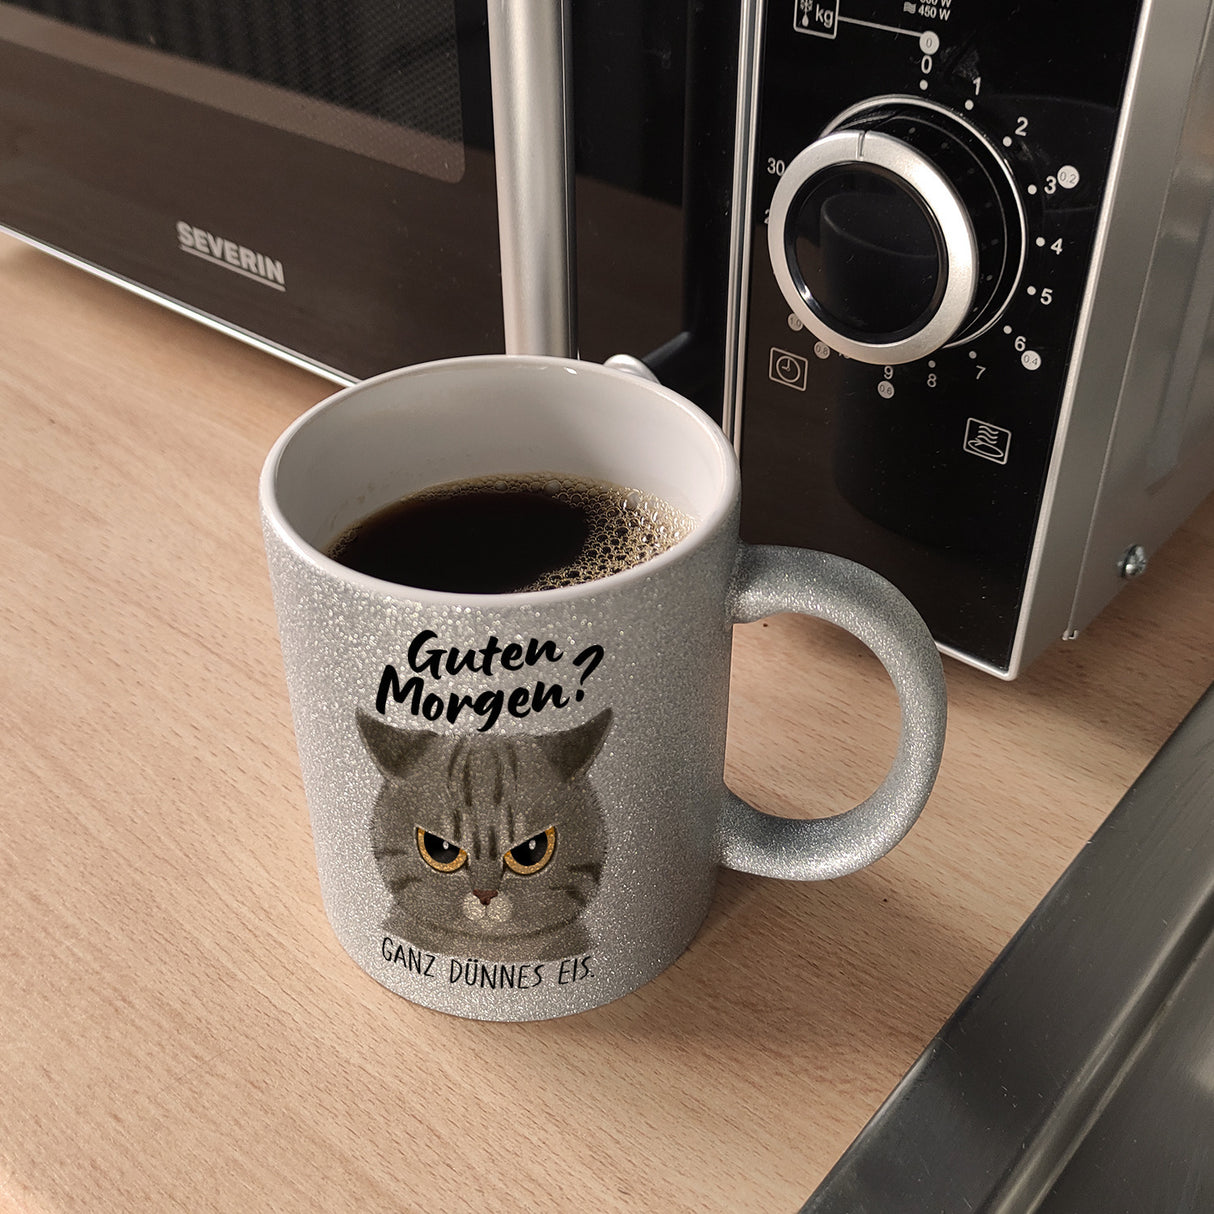 Morgenmuffel Katze Kaffeebecher mit Spruch Guten Morgen - Ganz dünnes Eis